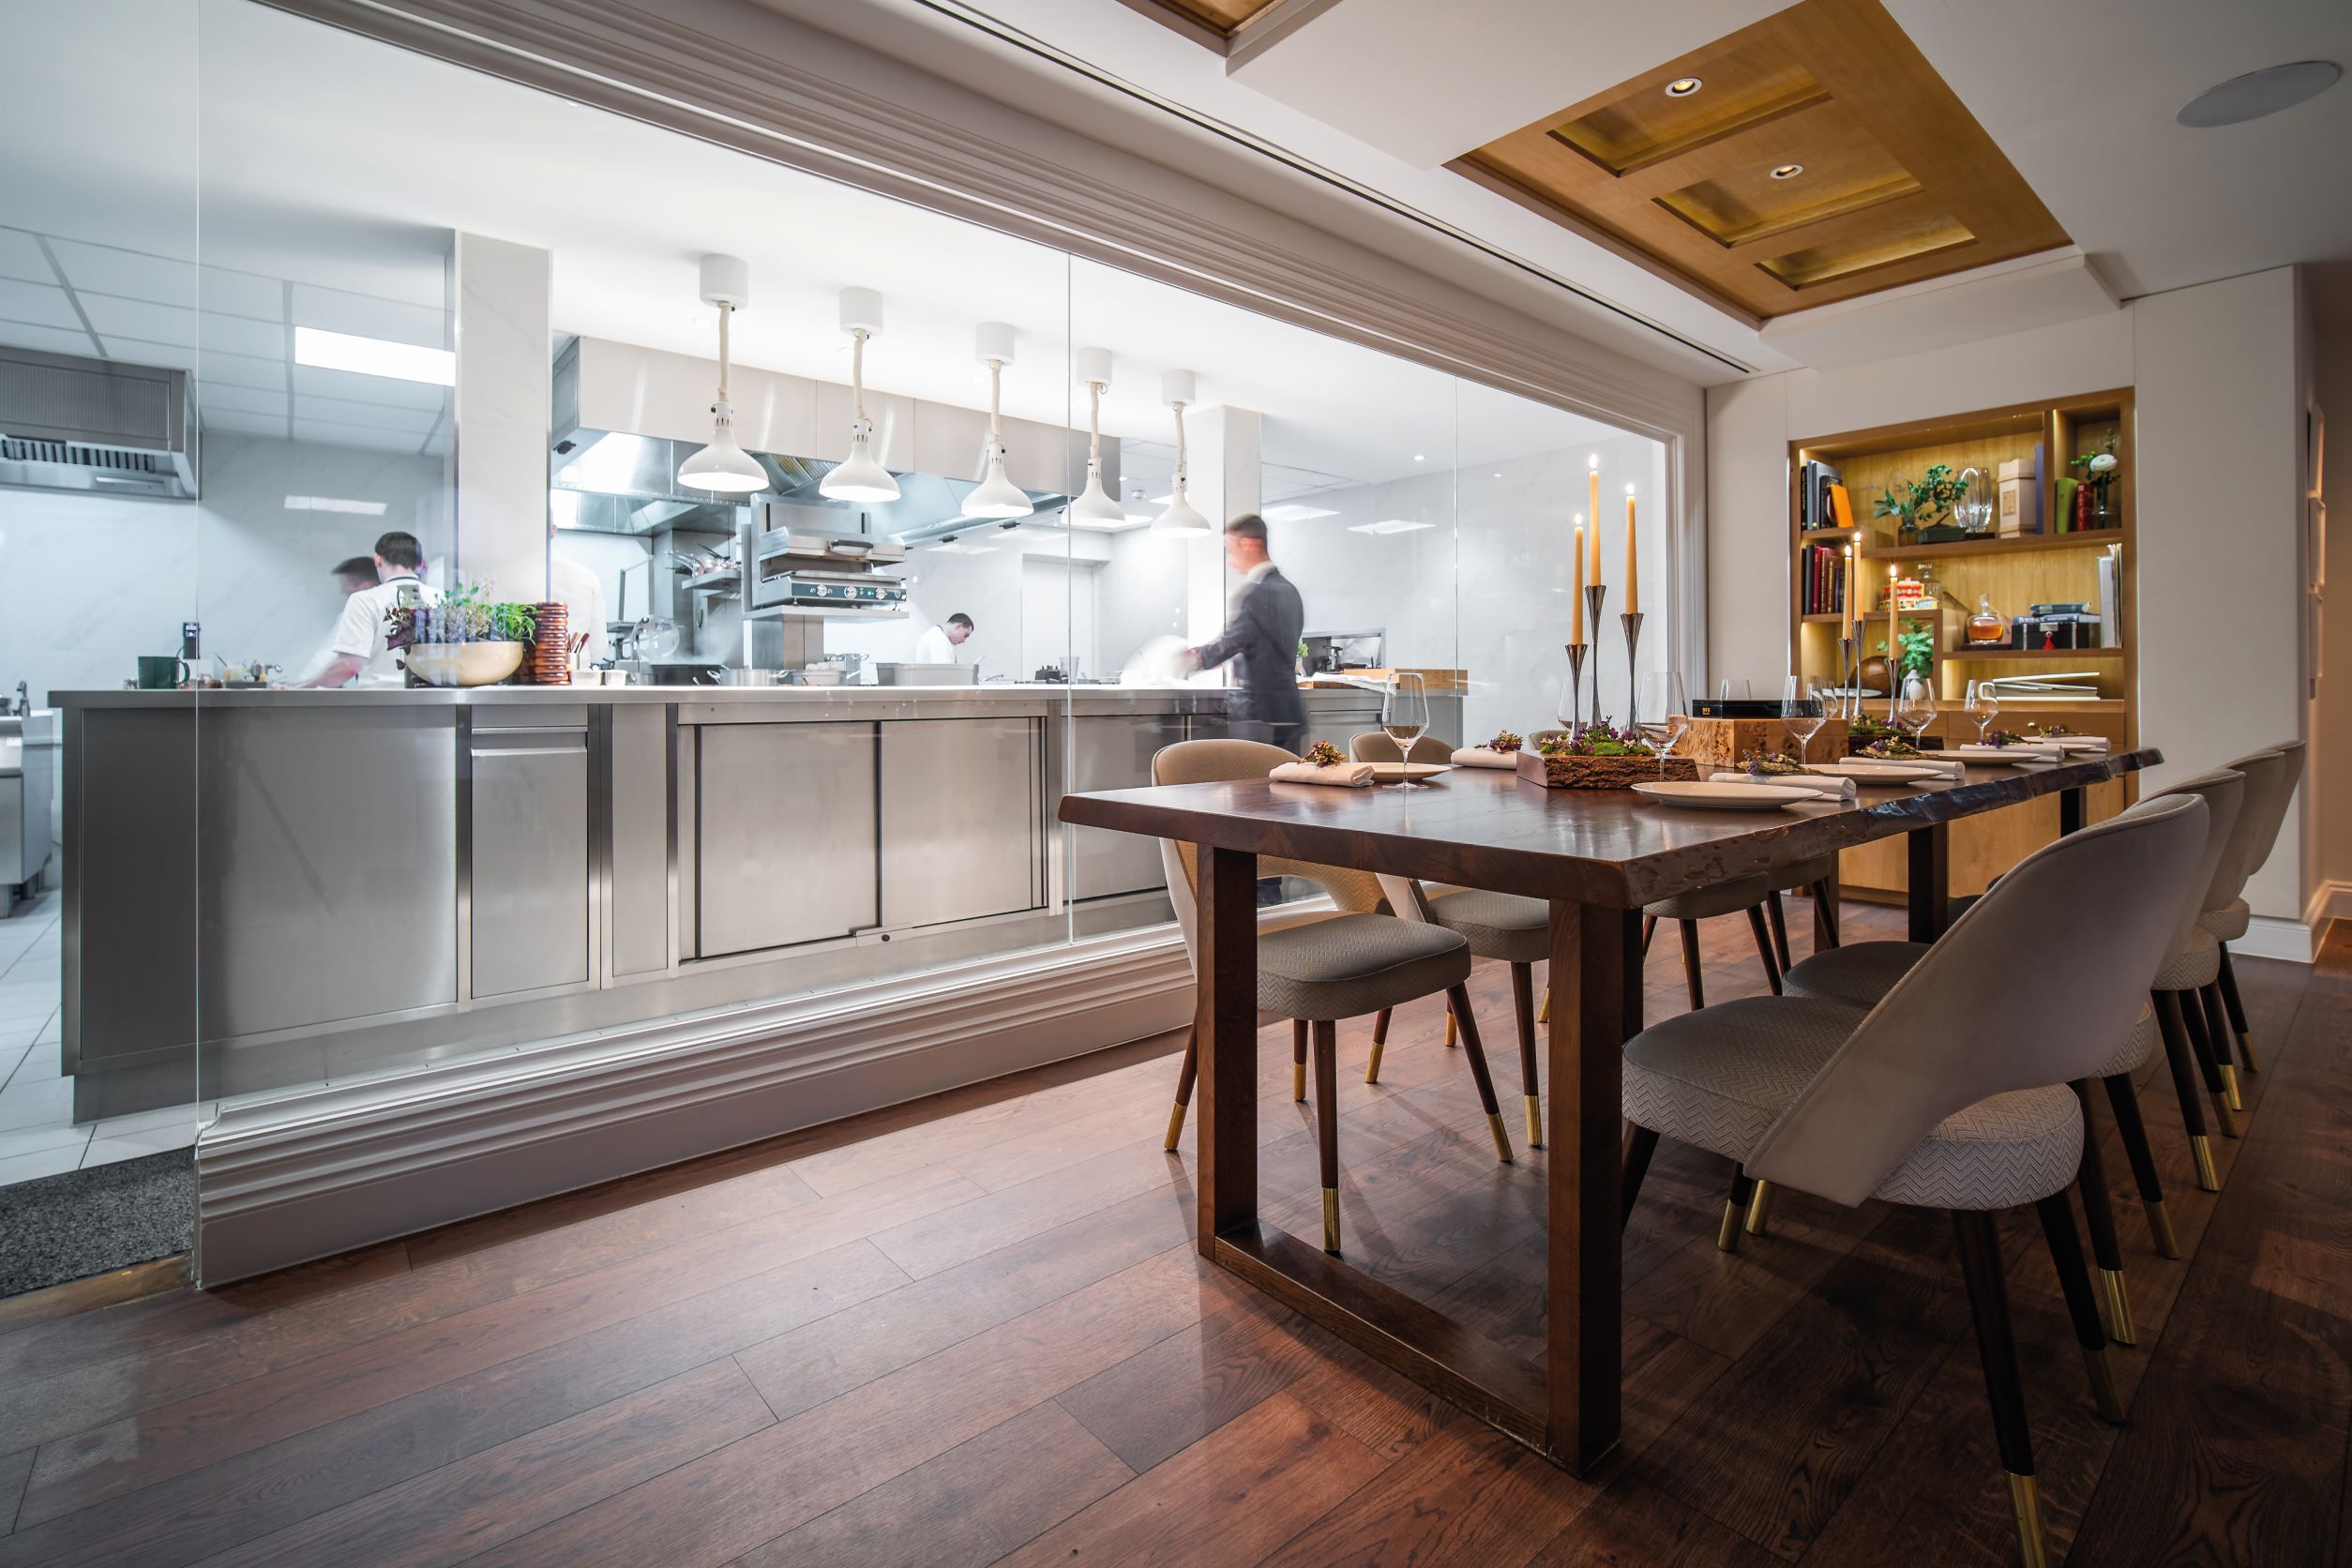 開放式的廚房設計讓賓客可以欣賞到餐廳的作業流程。